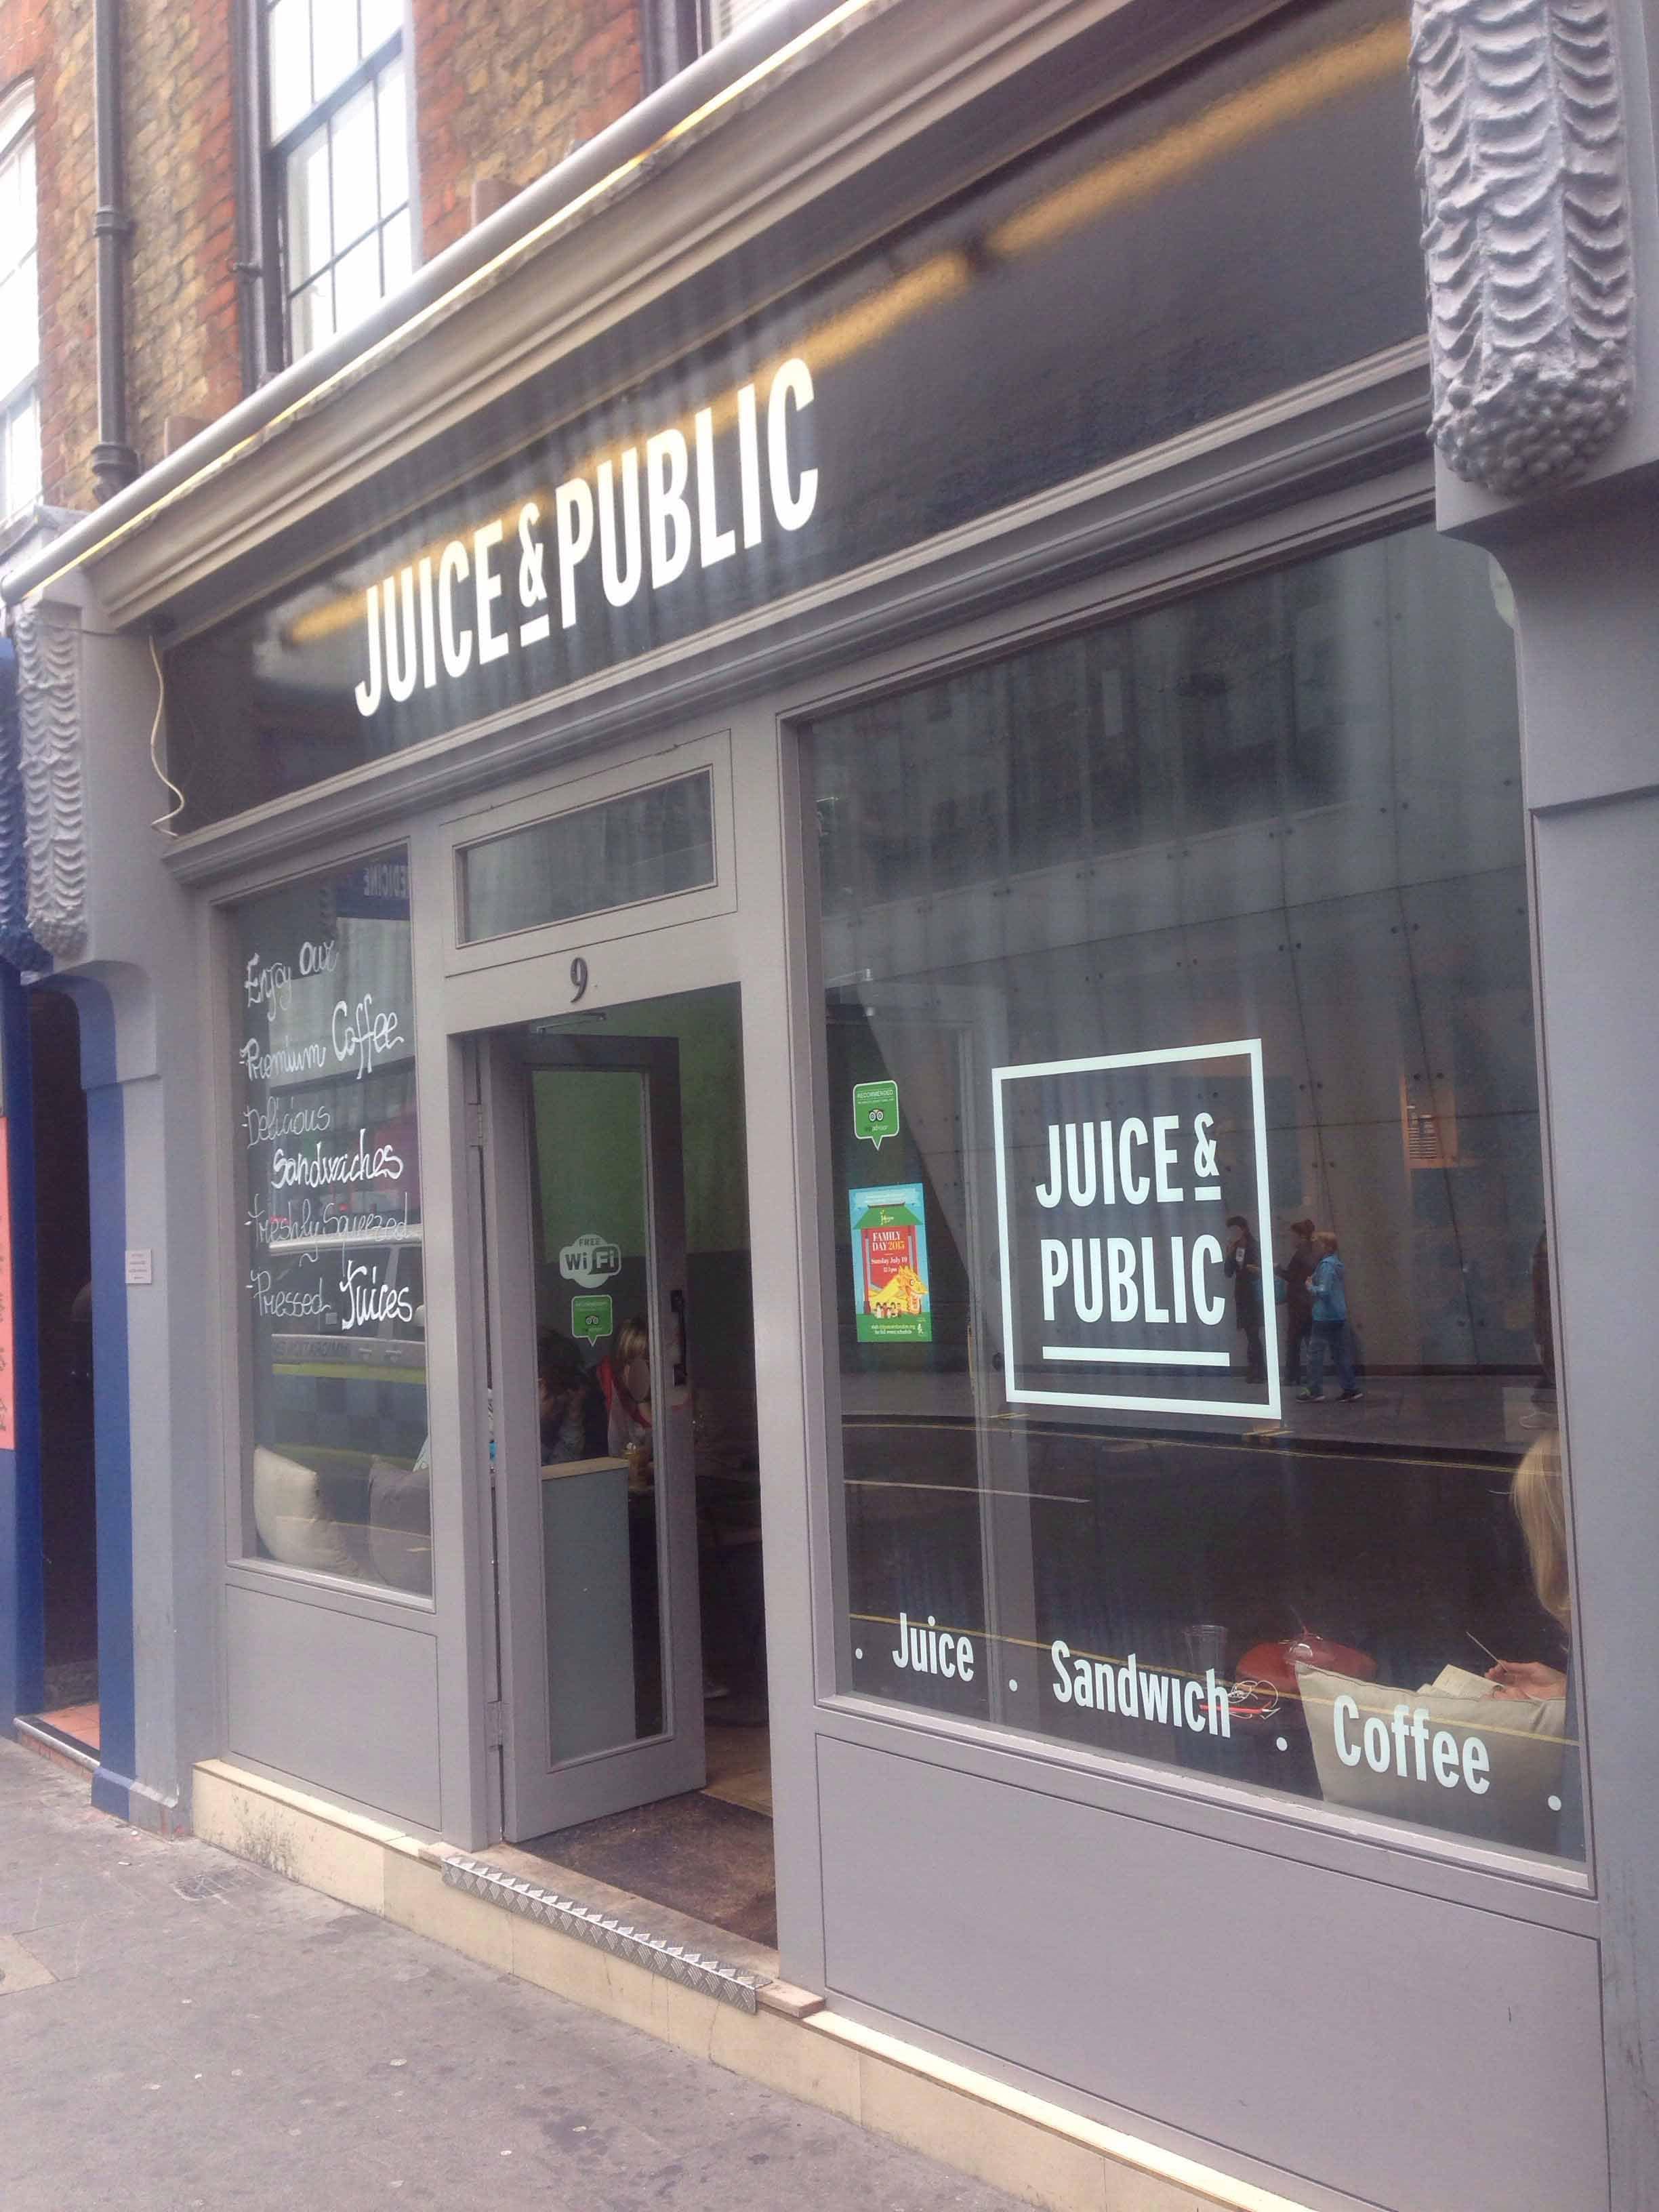 Juice & Public